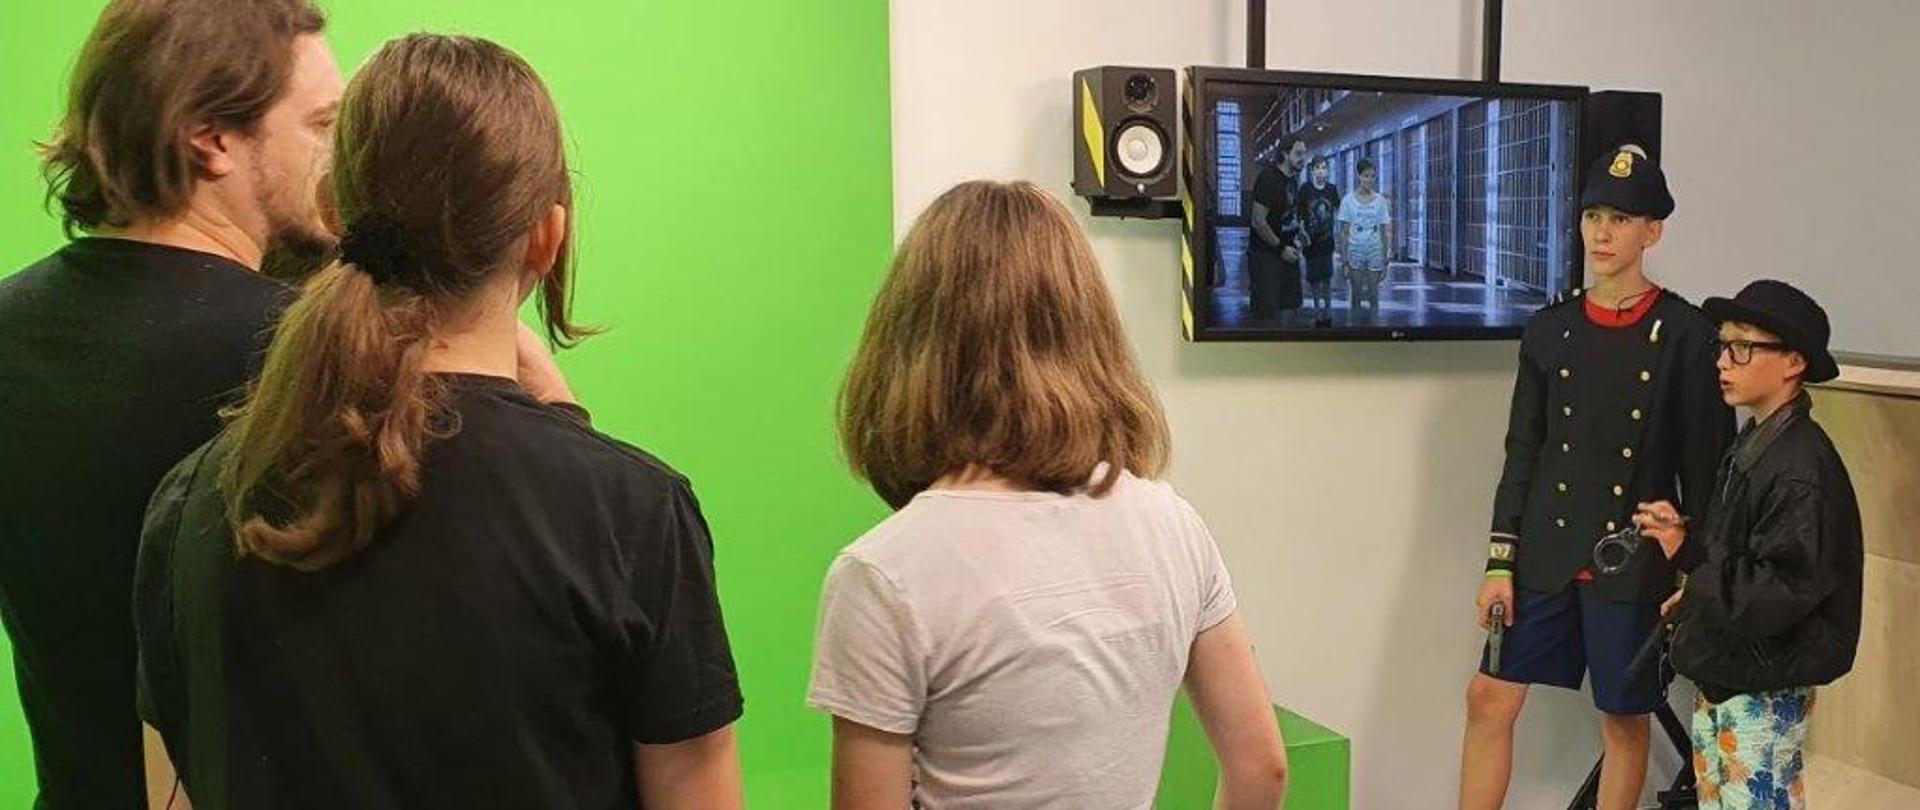 Dzieci w studio z zieloną ścianą oglądają na monitorze swoje nagranie 